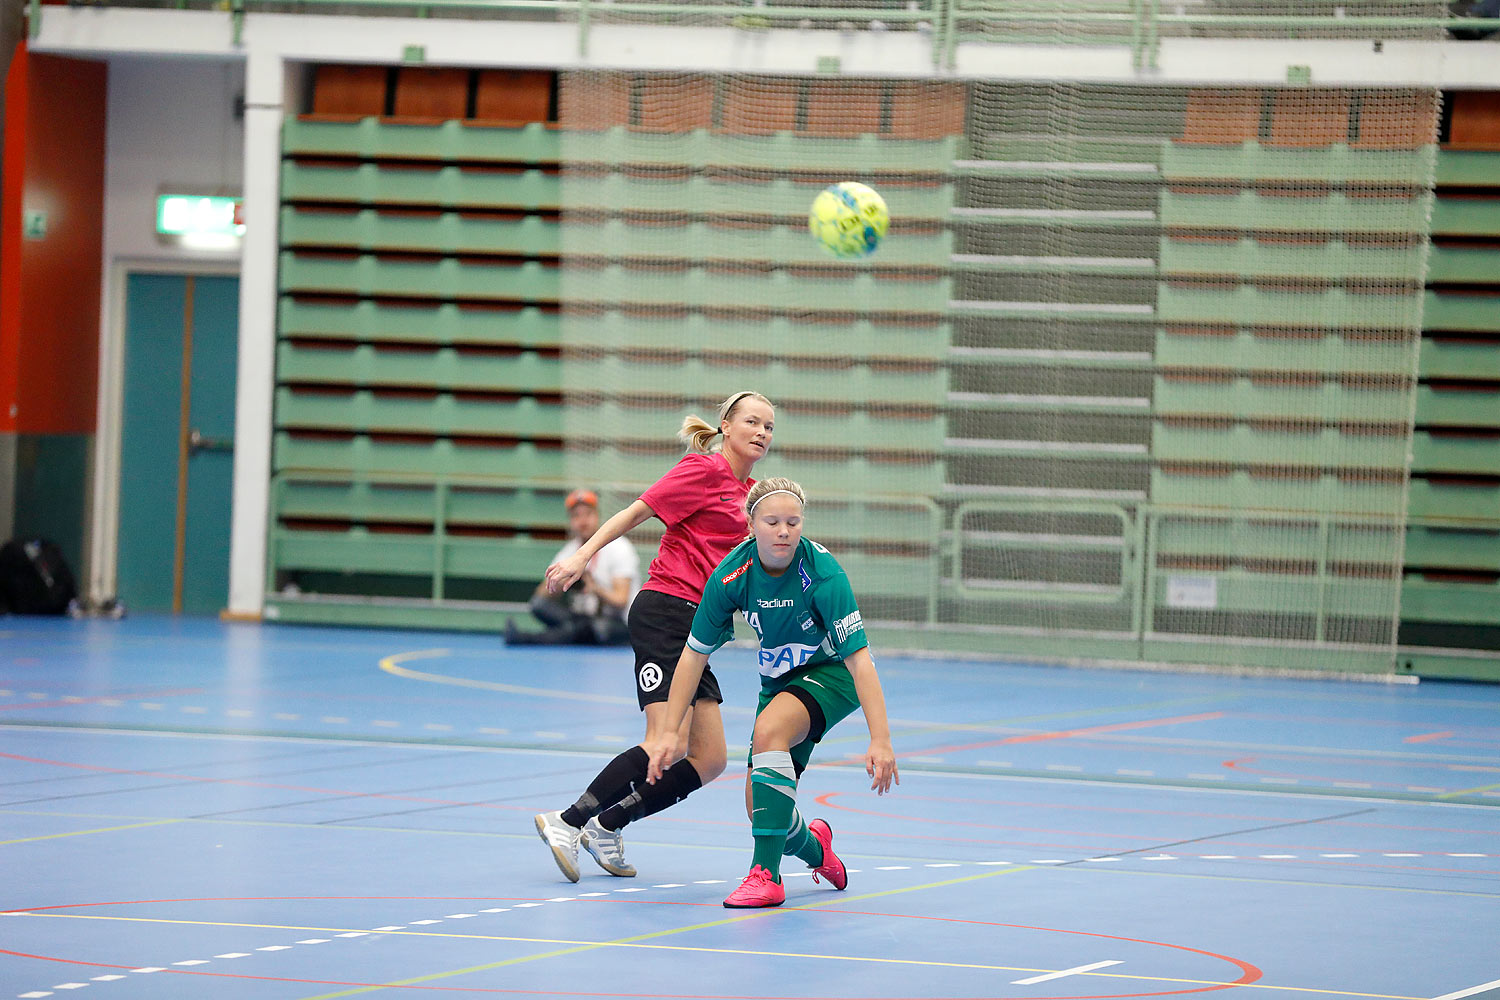 Skövde Futsalcup Damer Falköping Futsal Club-Våmbs IF,dam,Arena Skövde,Skövde,Sverige,Skövde Futsalcup 2016,Futsal,2016,141876